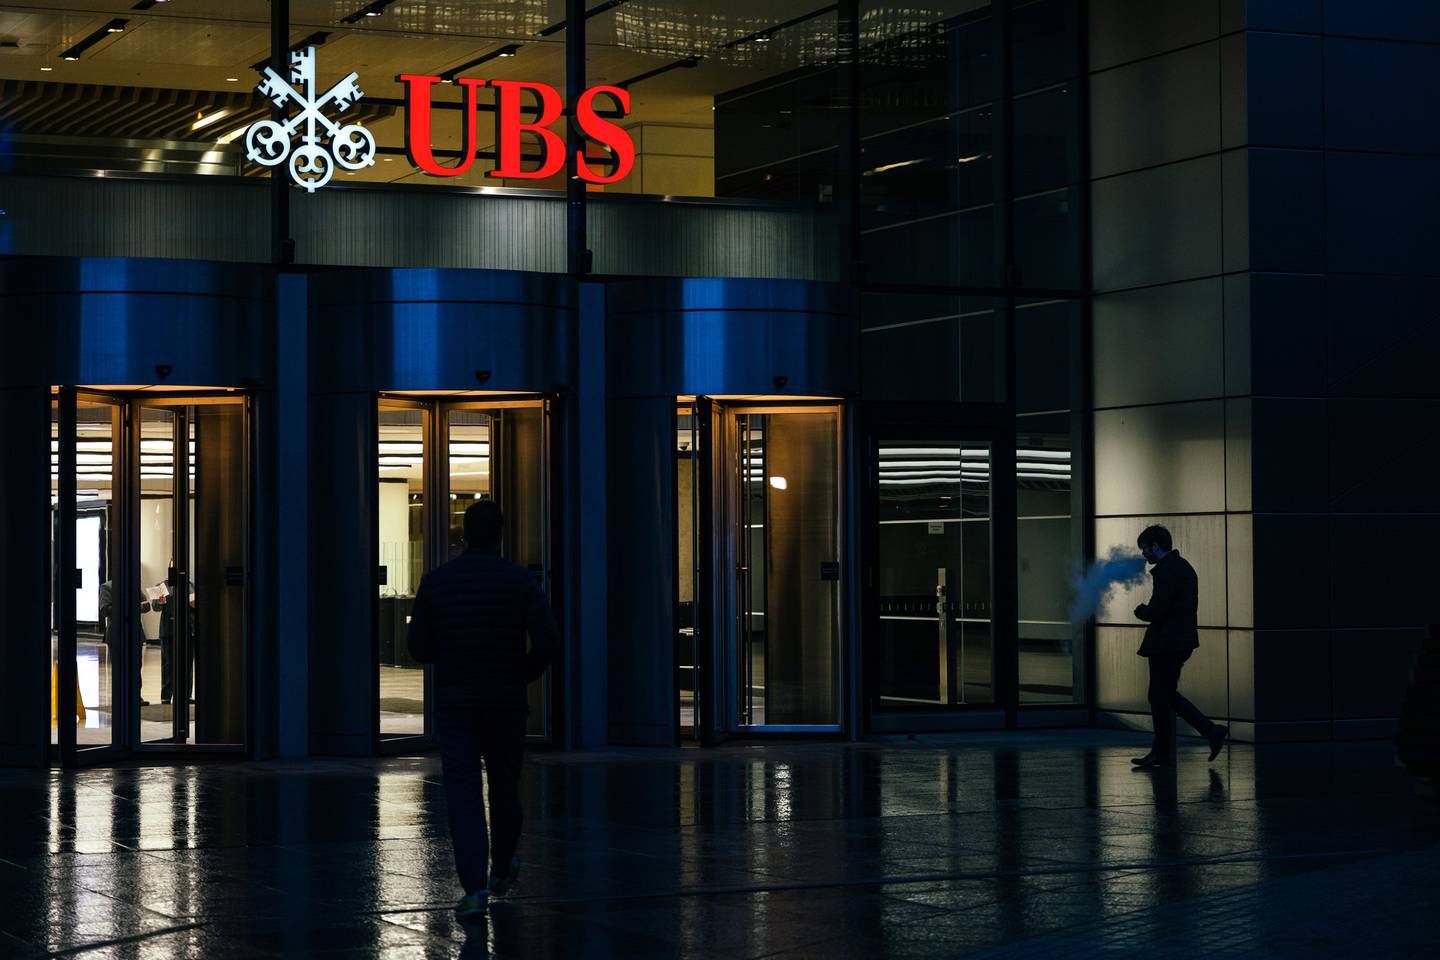 El mayor banco suizo pagará US$ 3.300 millones por Credit Suisse, en una operación que el presidente de UBS, Colm Kelleher, calificó de "rescate de emergencia"